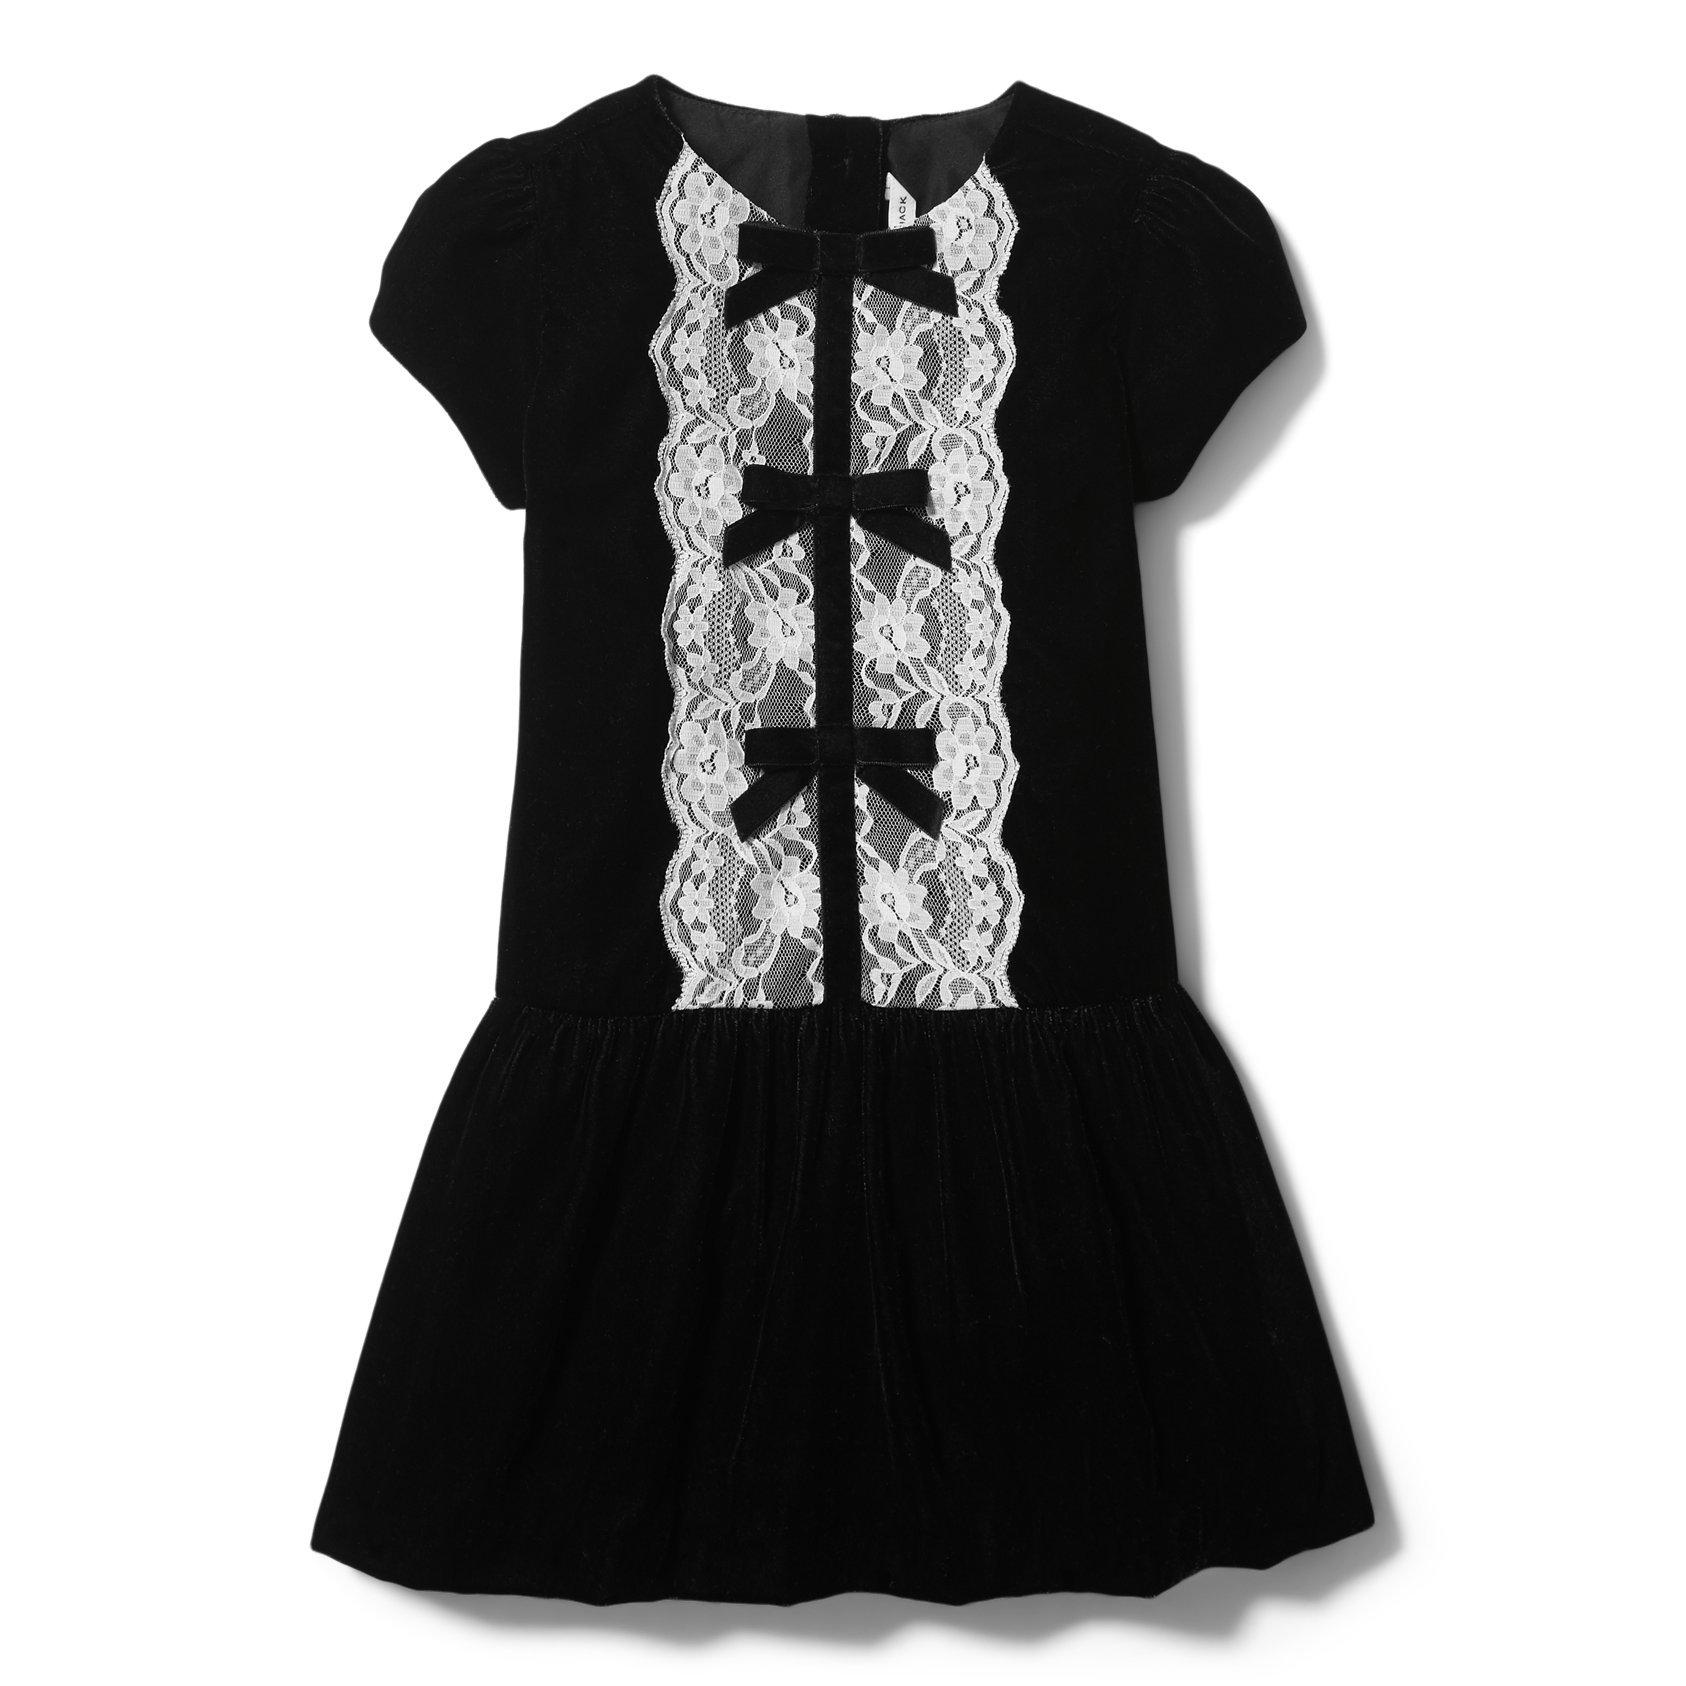 The Black Velvet Bow Jersey Dress by Tulleen 